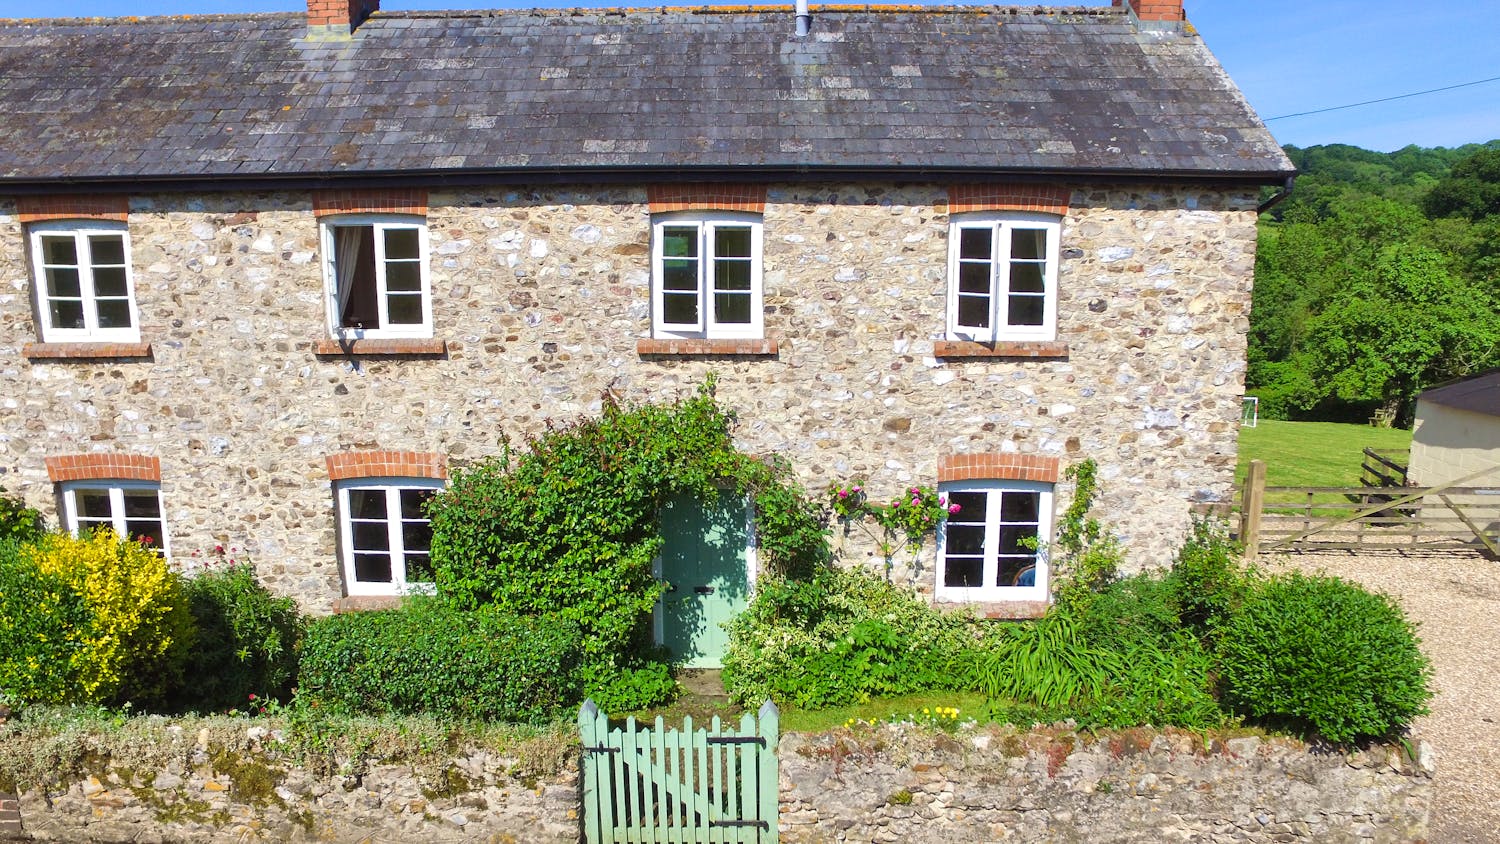 Windover Farm Cottage 2 Bedroom Cottage Holiday Rental In Devon